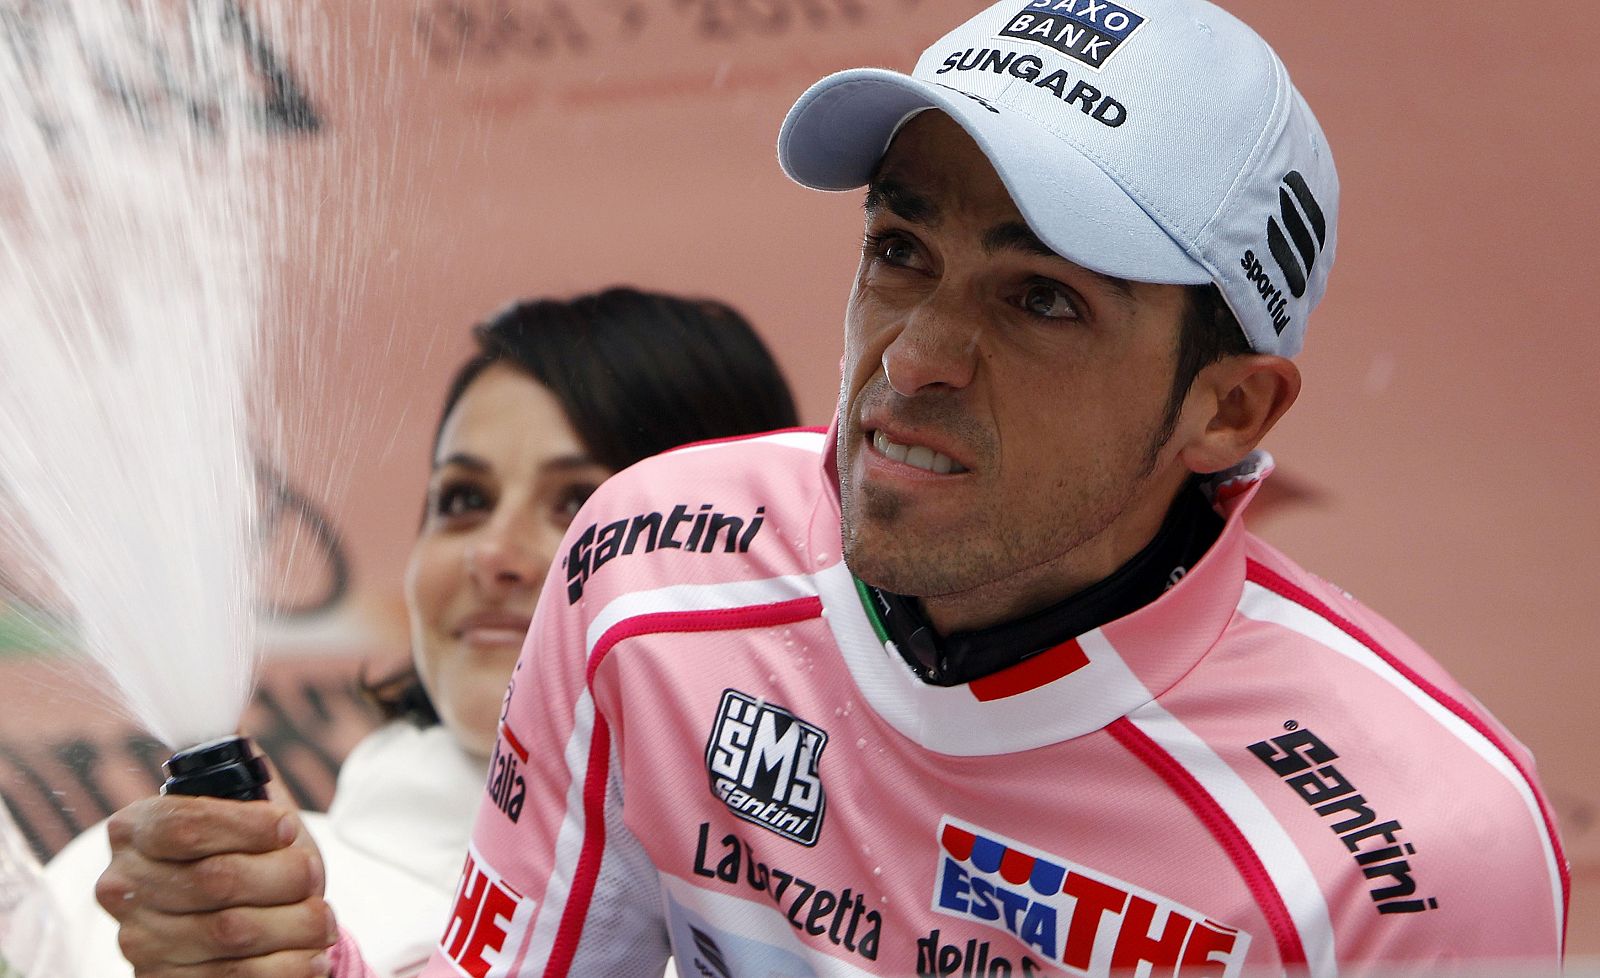 El líder de la carrera, Alberto Contador, en el podio de Gardeccia.